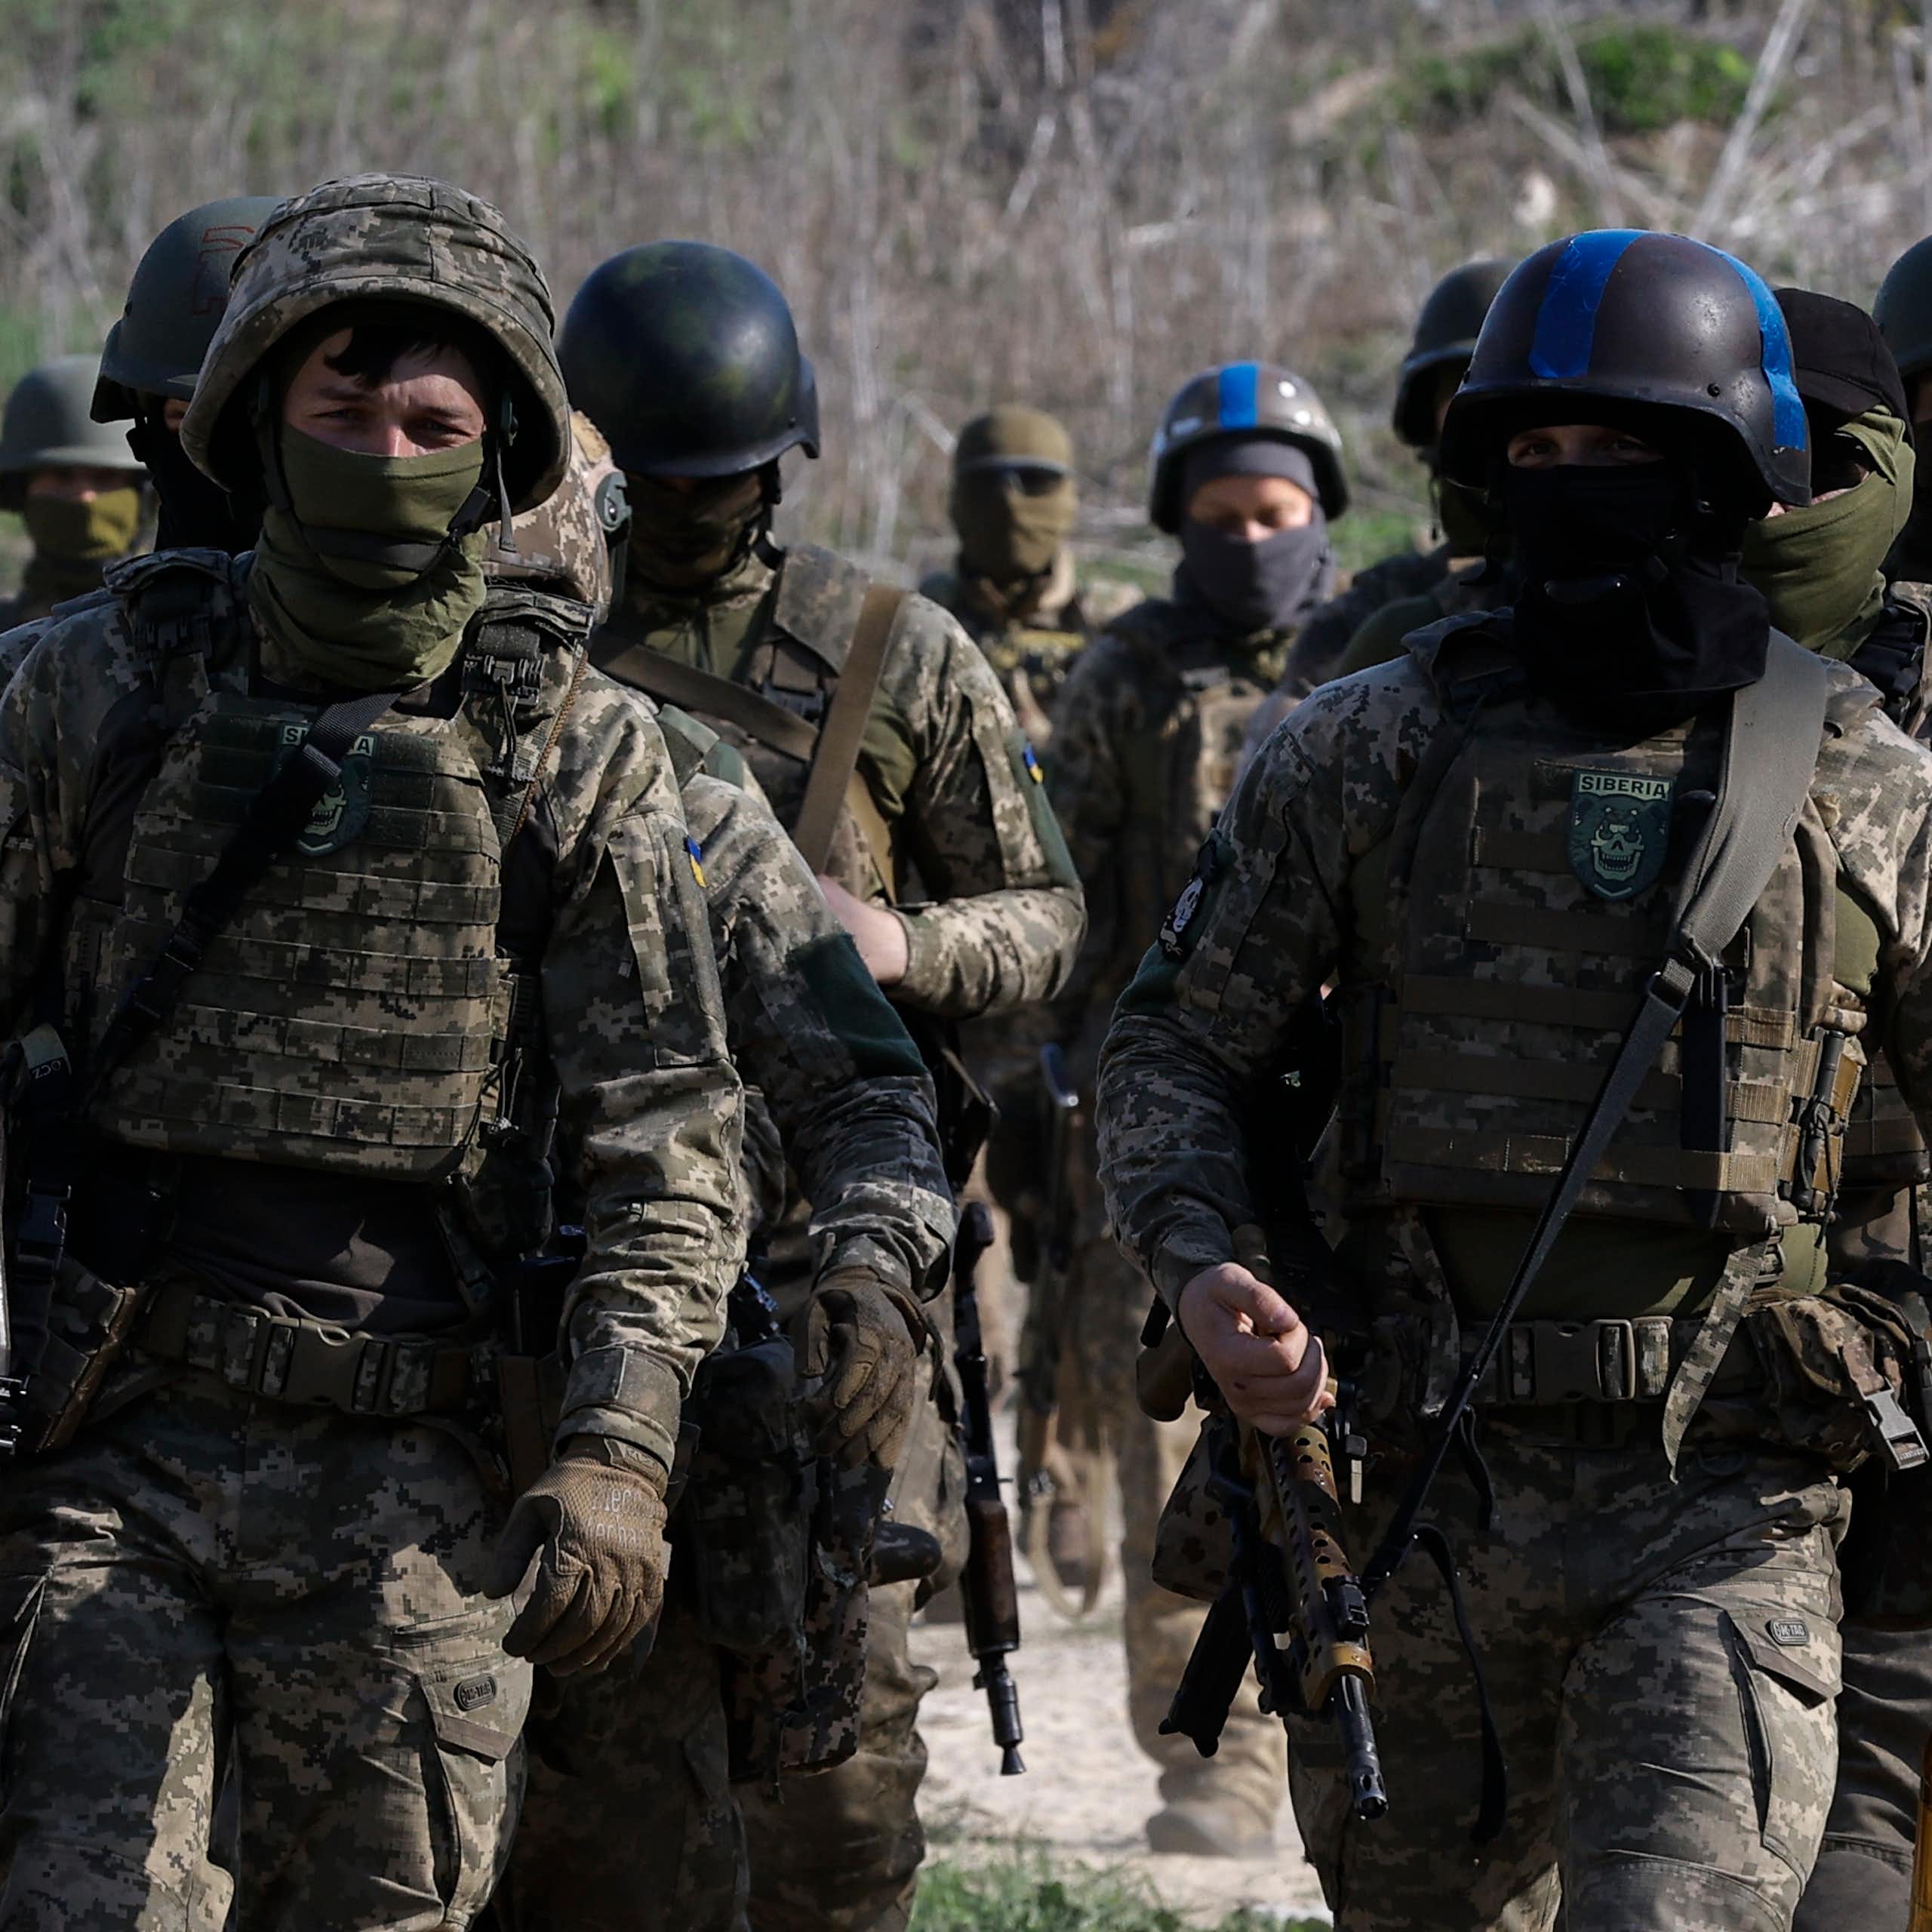 Ukrainian soldiers march in formation wearing full battledress.